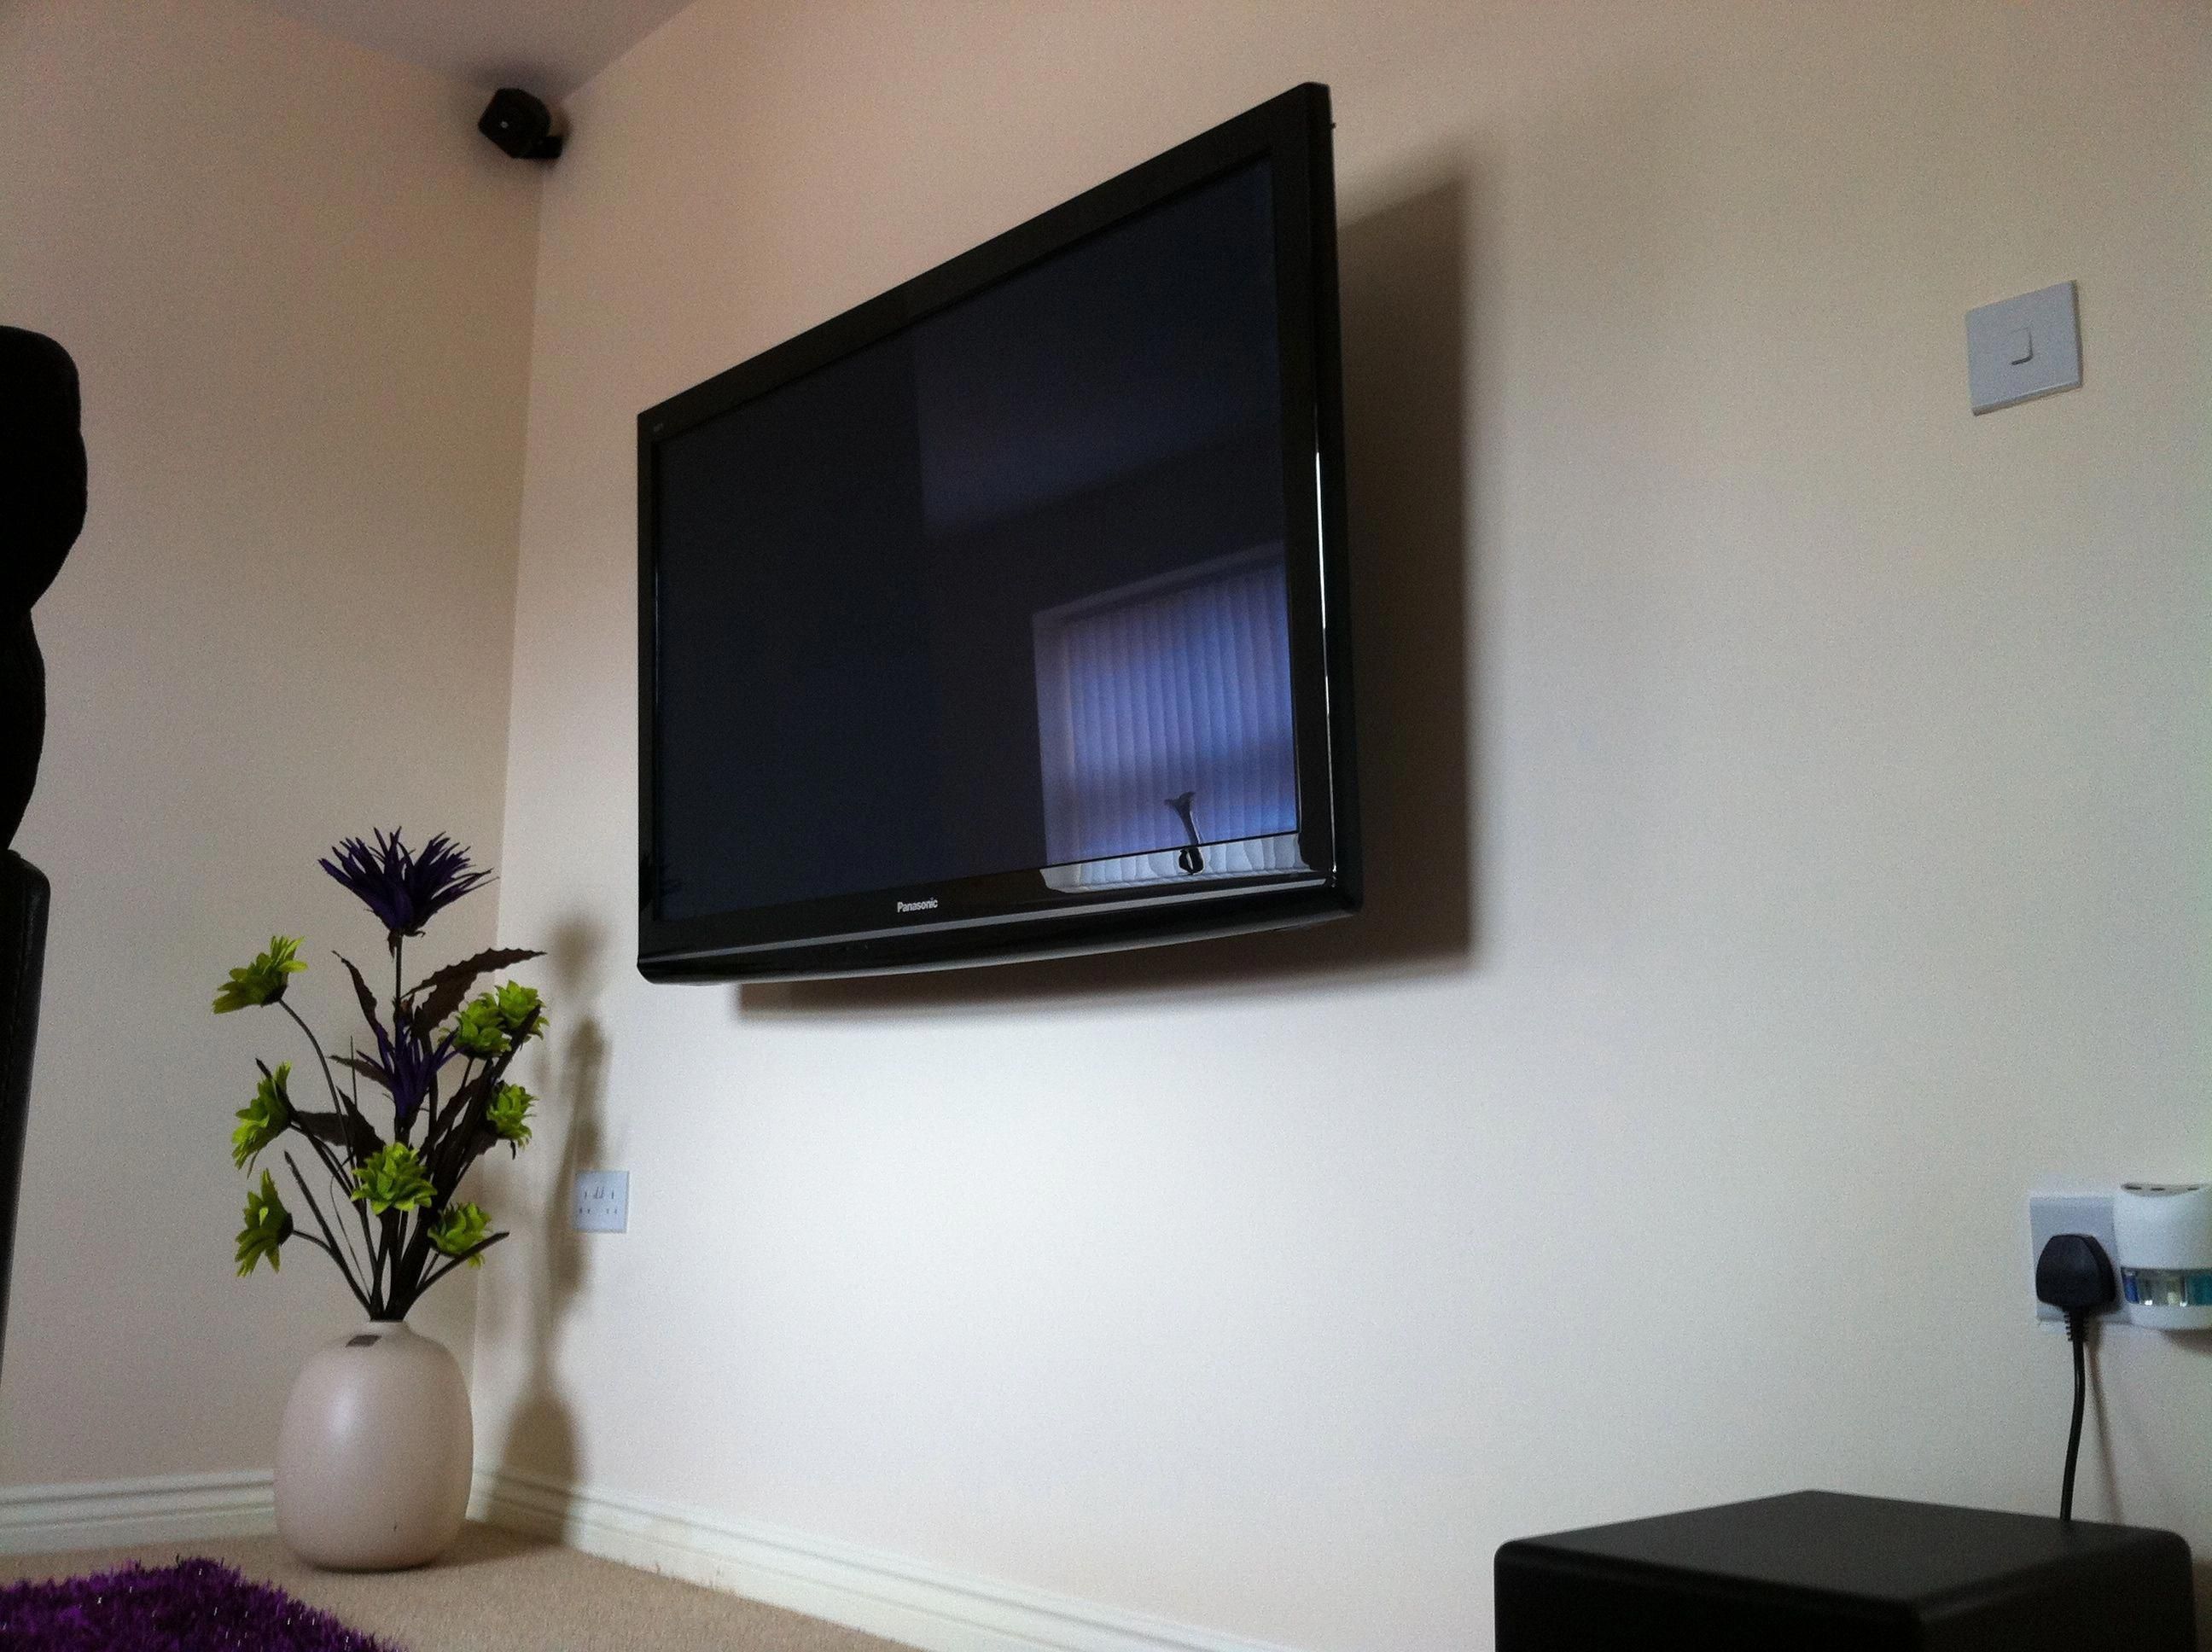 Телевизор на 1 час. Телевизор на стене. Плоский телевизор на стену. Стол для телевизора. Плазма на стене.